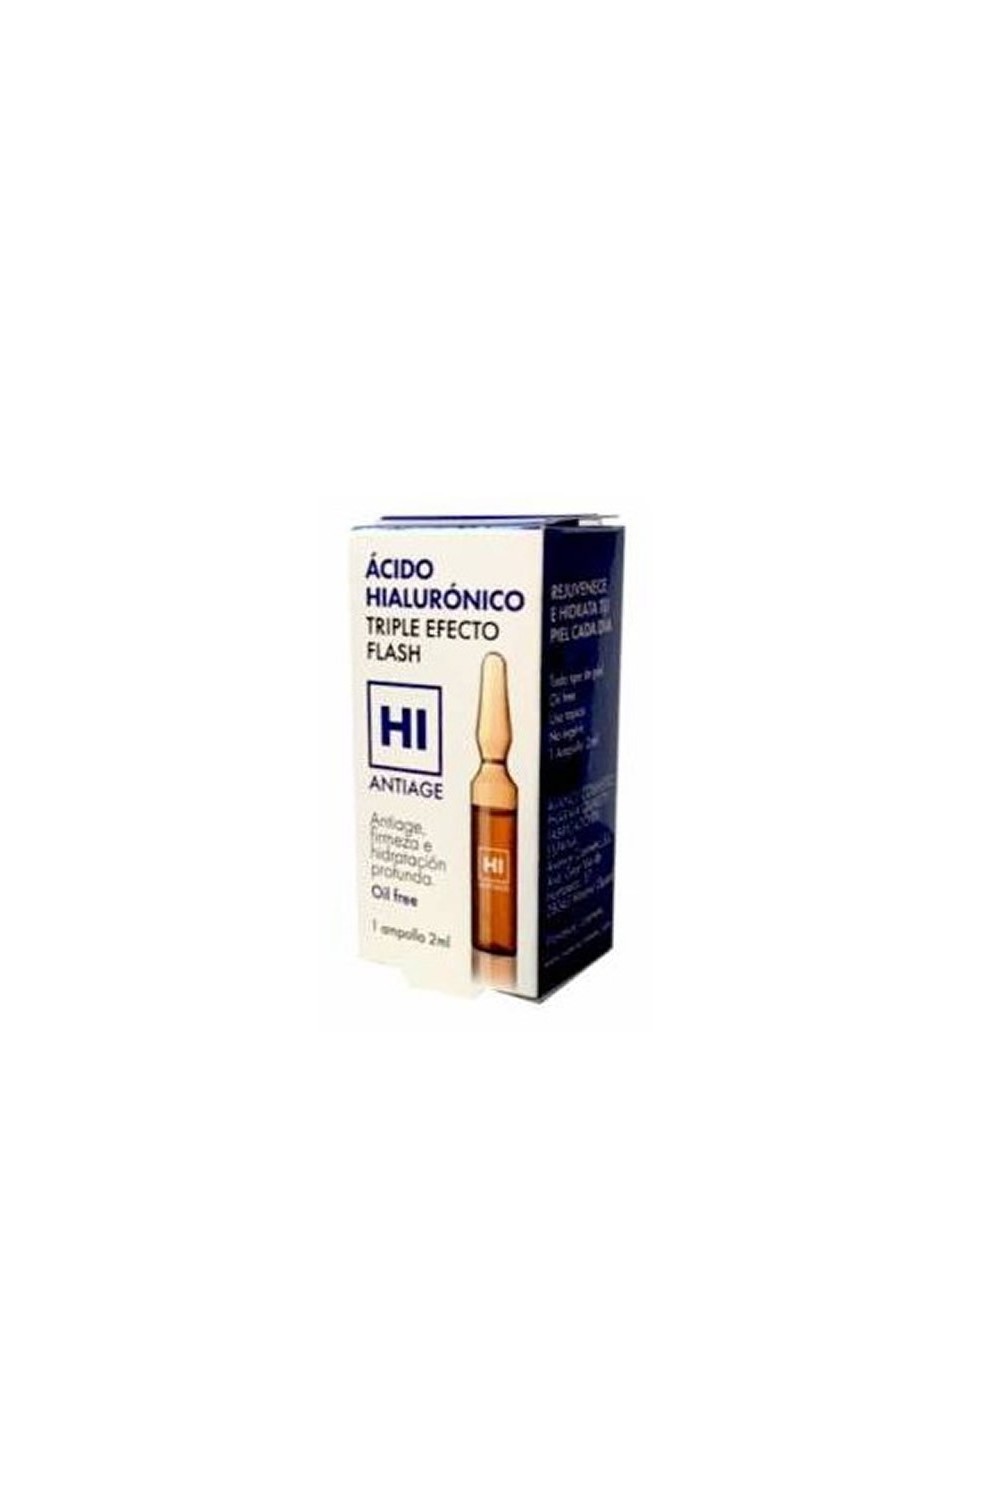 Redumodel Hi Antiage Hyaluronic Acid Ampoule Triple Flash Effect 2ml